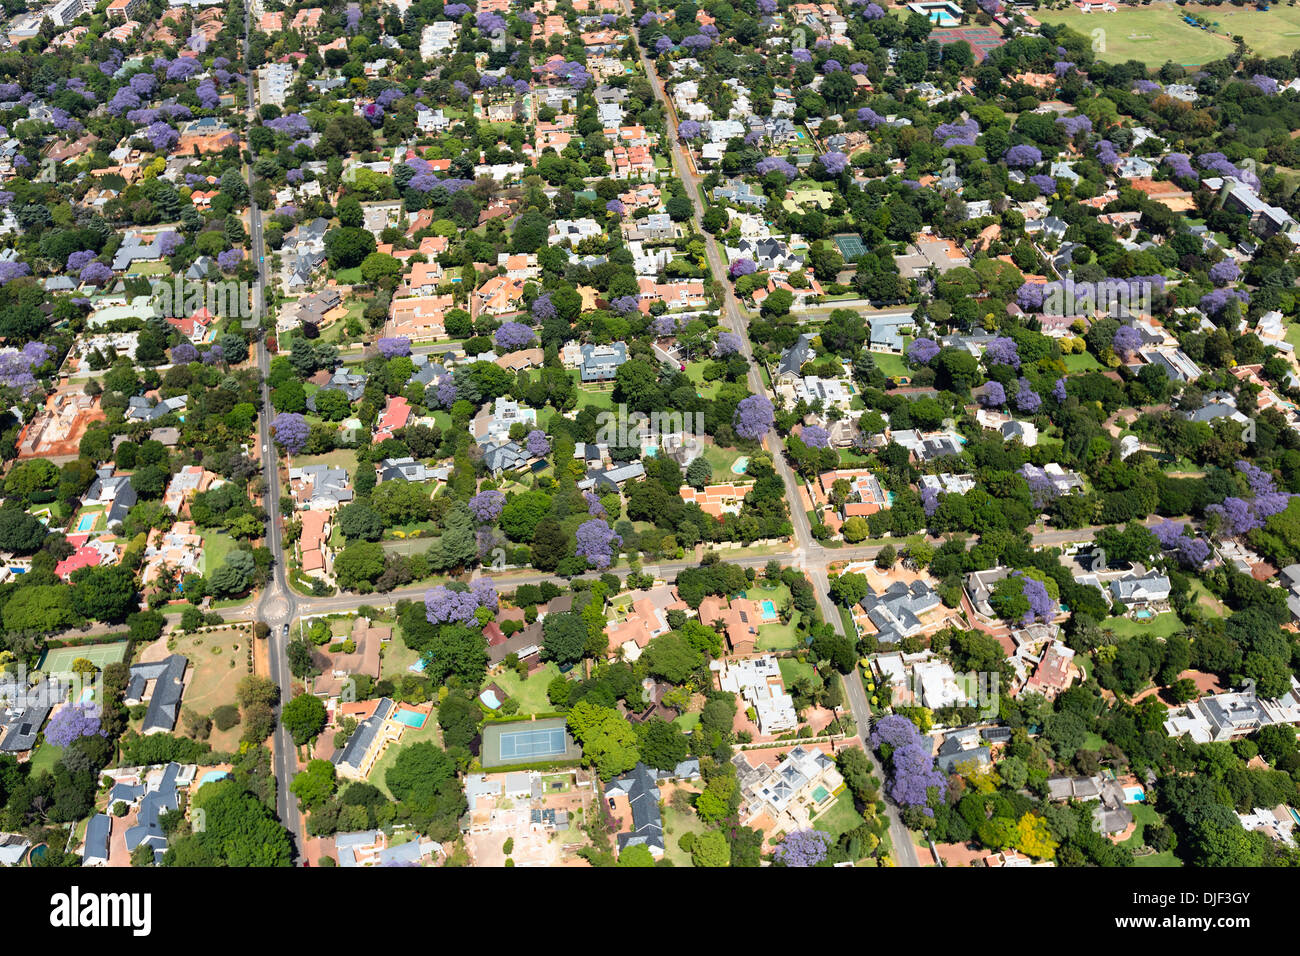 Luftaufnahme von Jacaranda-Bäume in Blüte, Johannesburg Vororte, so dass es eine der grünsten Städte der Welt. Südafrika Stockfoto